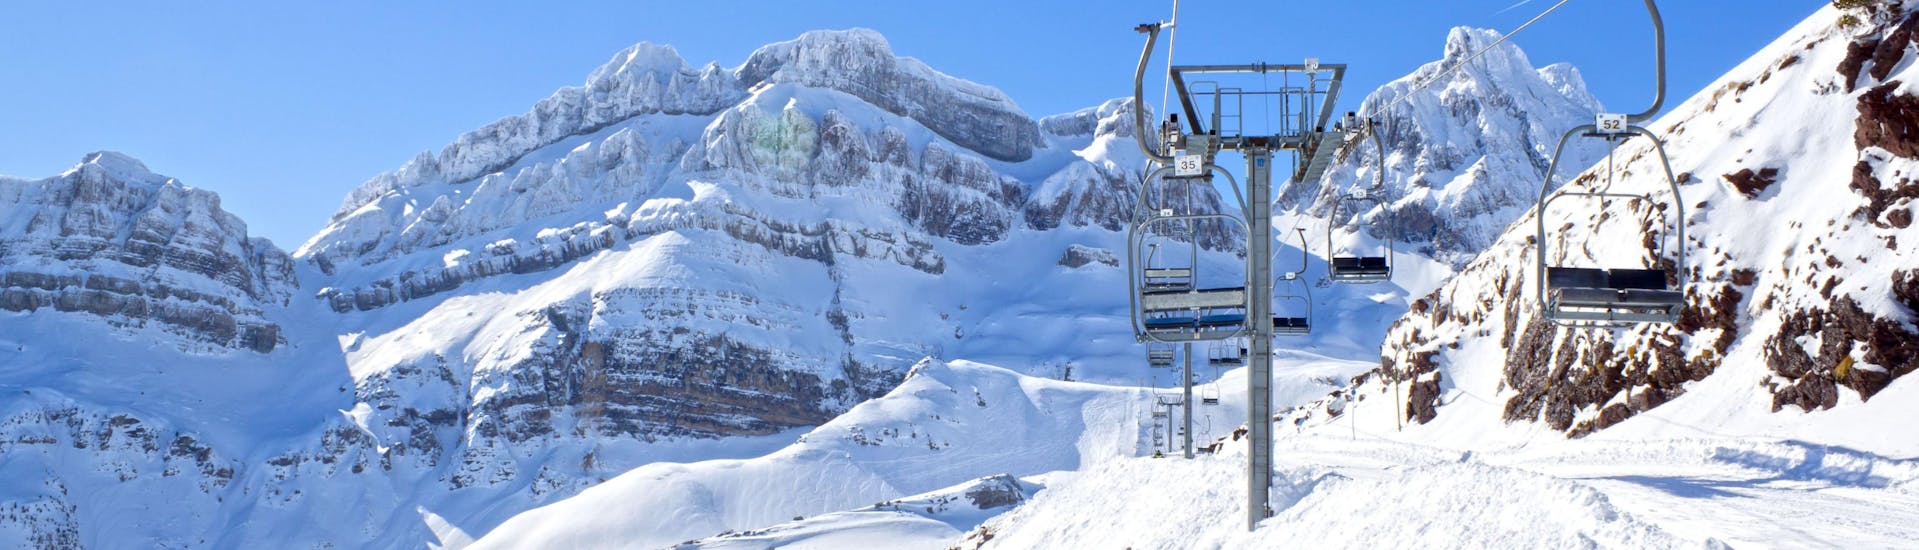 Ein Blick auf einen Skilift im spanischen Skigebiet Candanchú, wo örtliche Skischulen unterschiedliche Skikurse für diejenigen anbieten, die das Skifahren lernen wollen.